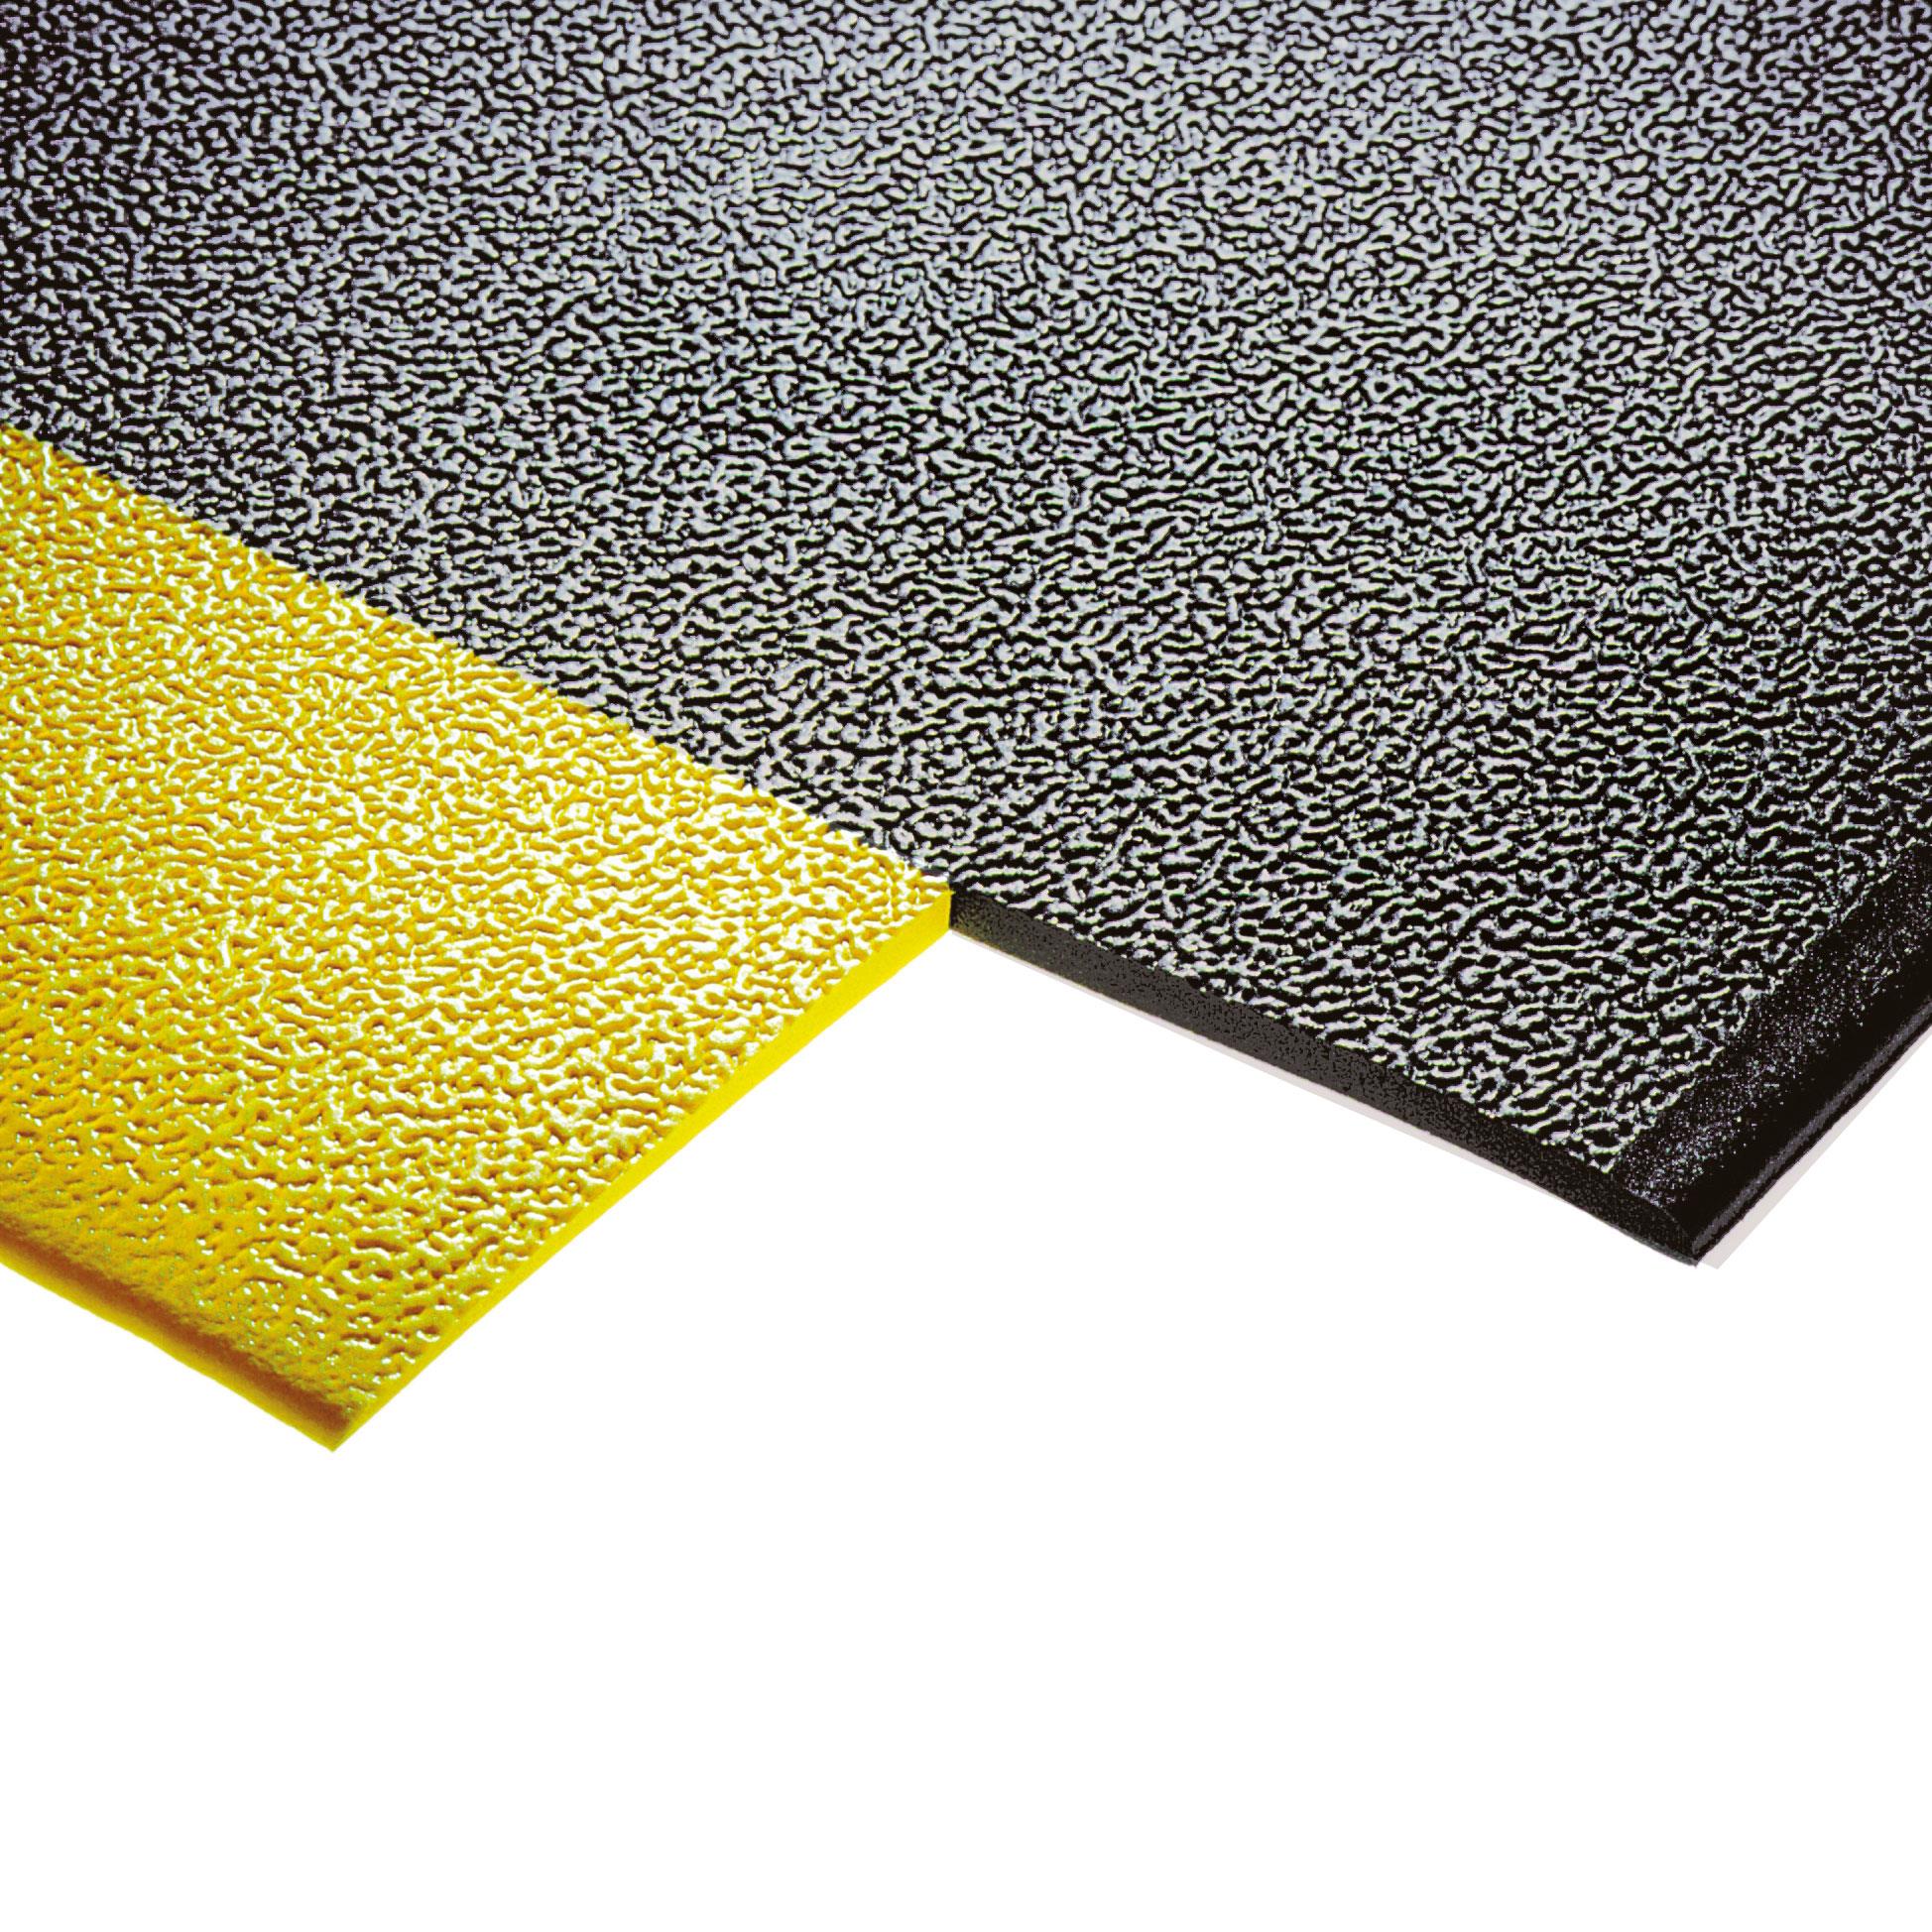 Bodenmatte, mit Strukturoberfläche, schwarz/gelb, LxB 1500x900 mm, Stärke 9 mm, Vinyl-Schaum-Belag